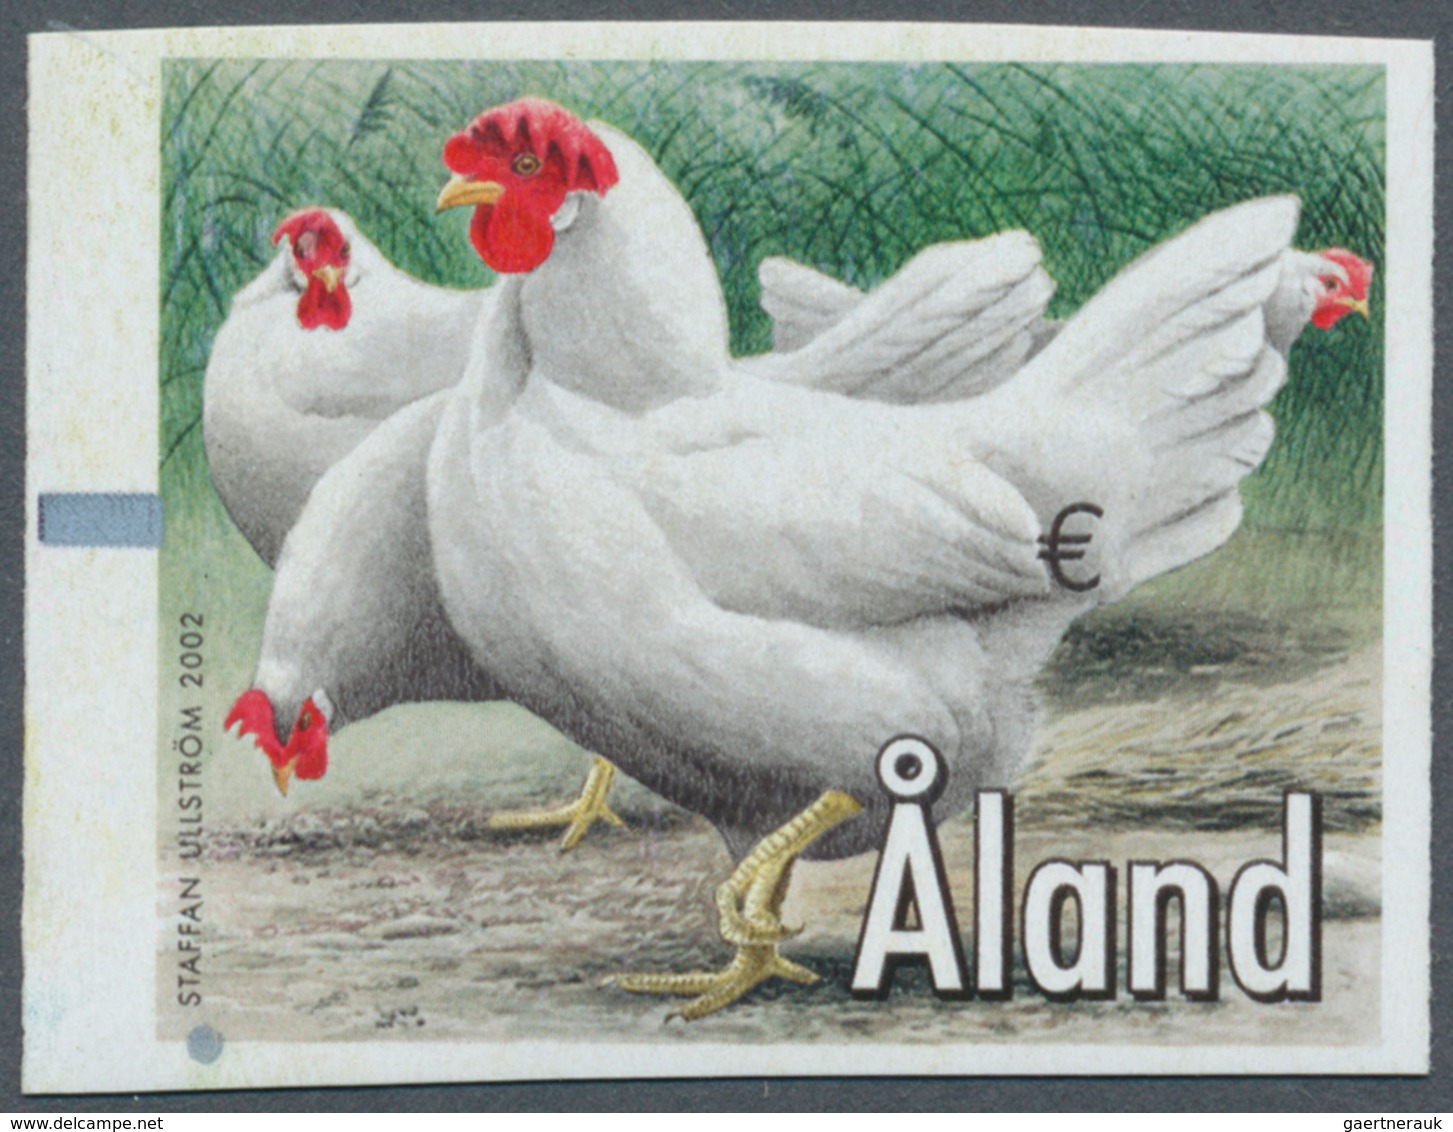 11060 Thematik: Tiere-Hühnervögel / Animals-gallinaceus Birds: 2002, Aland Machine Labels, Design "Chicken - Hühnervögel & Fasanen